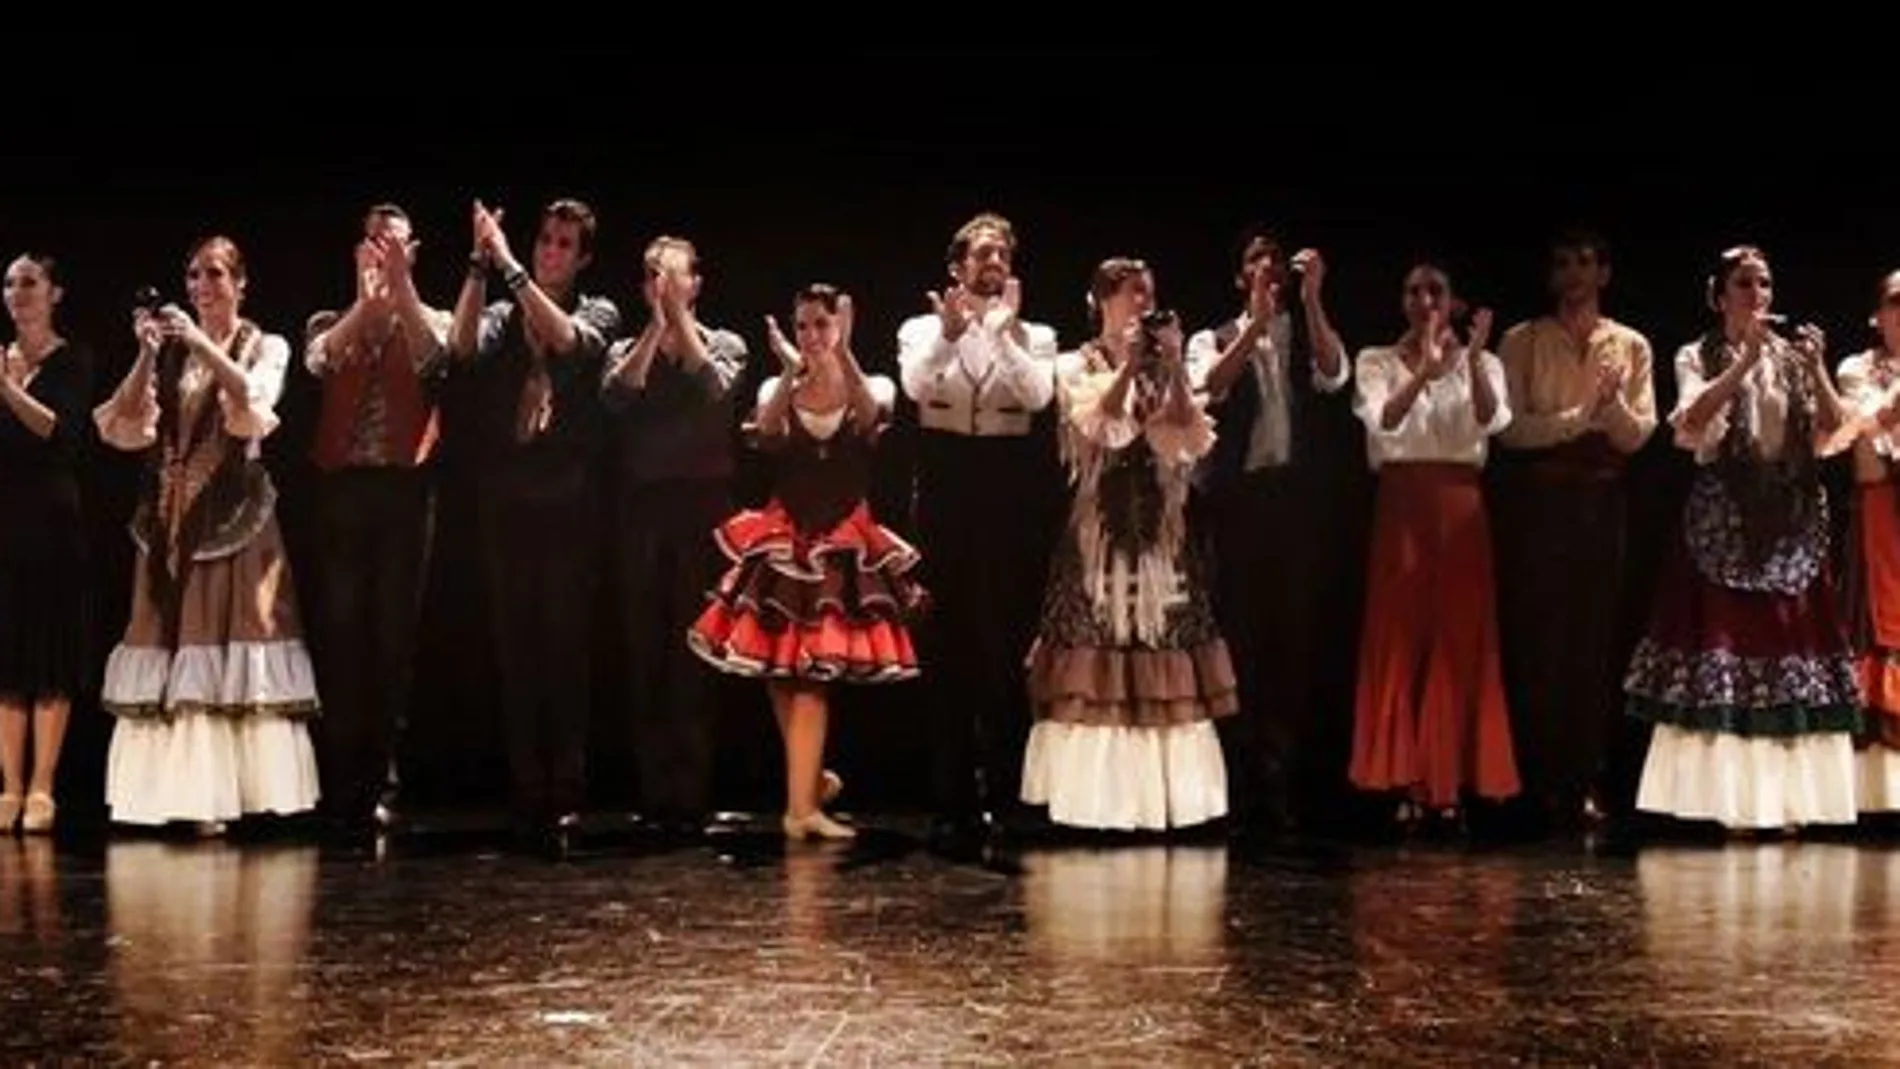 Ballet Nacional de España